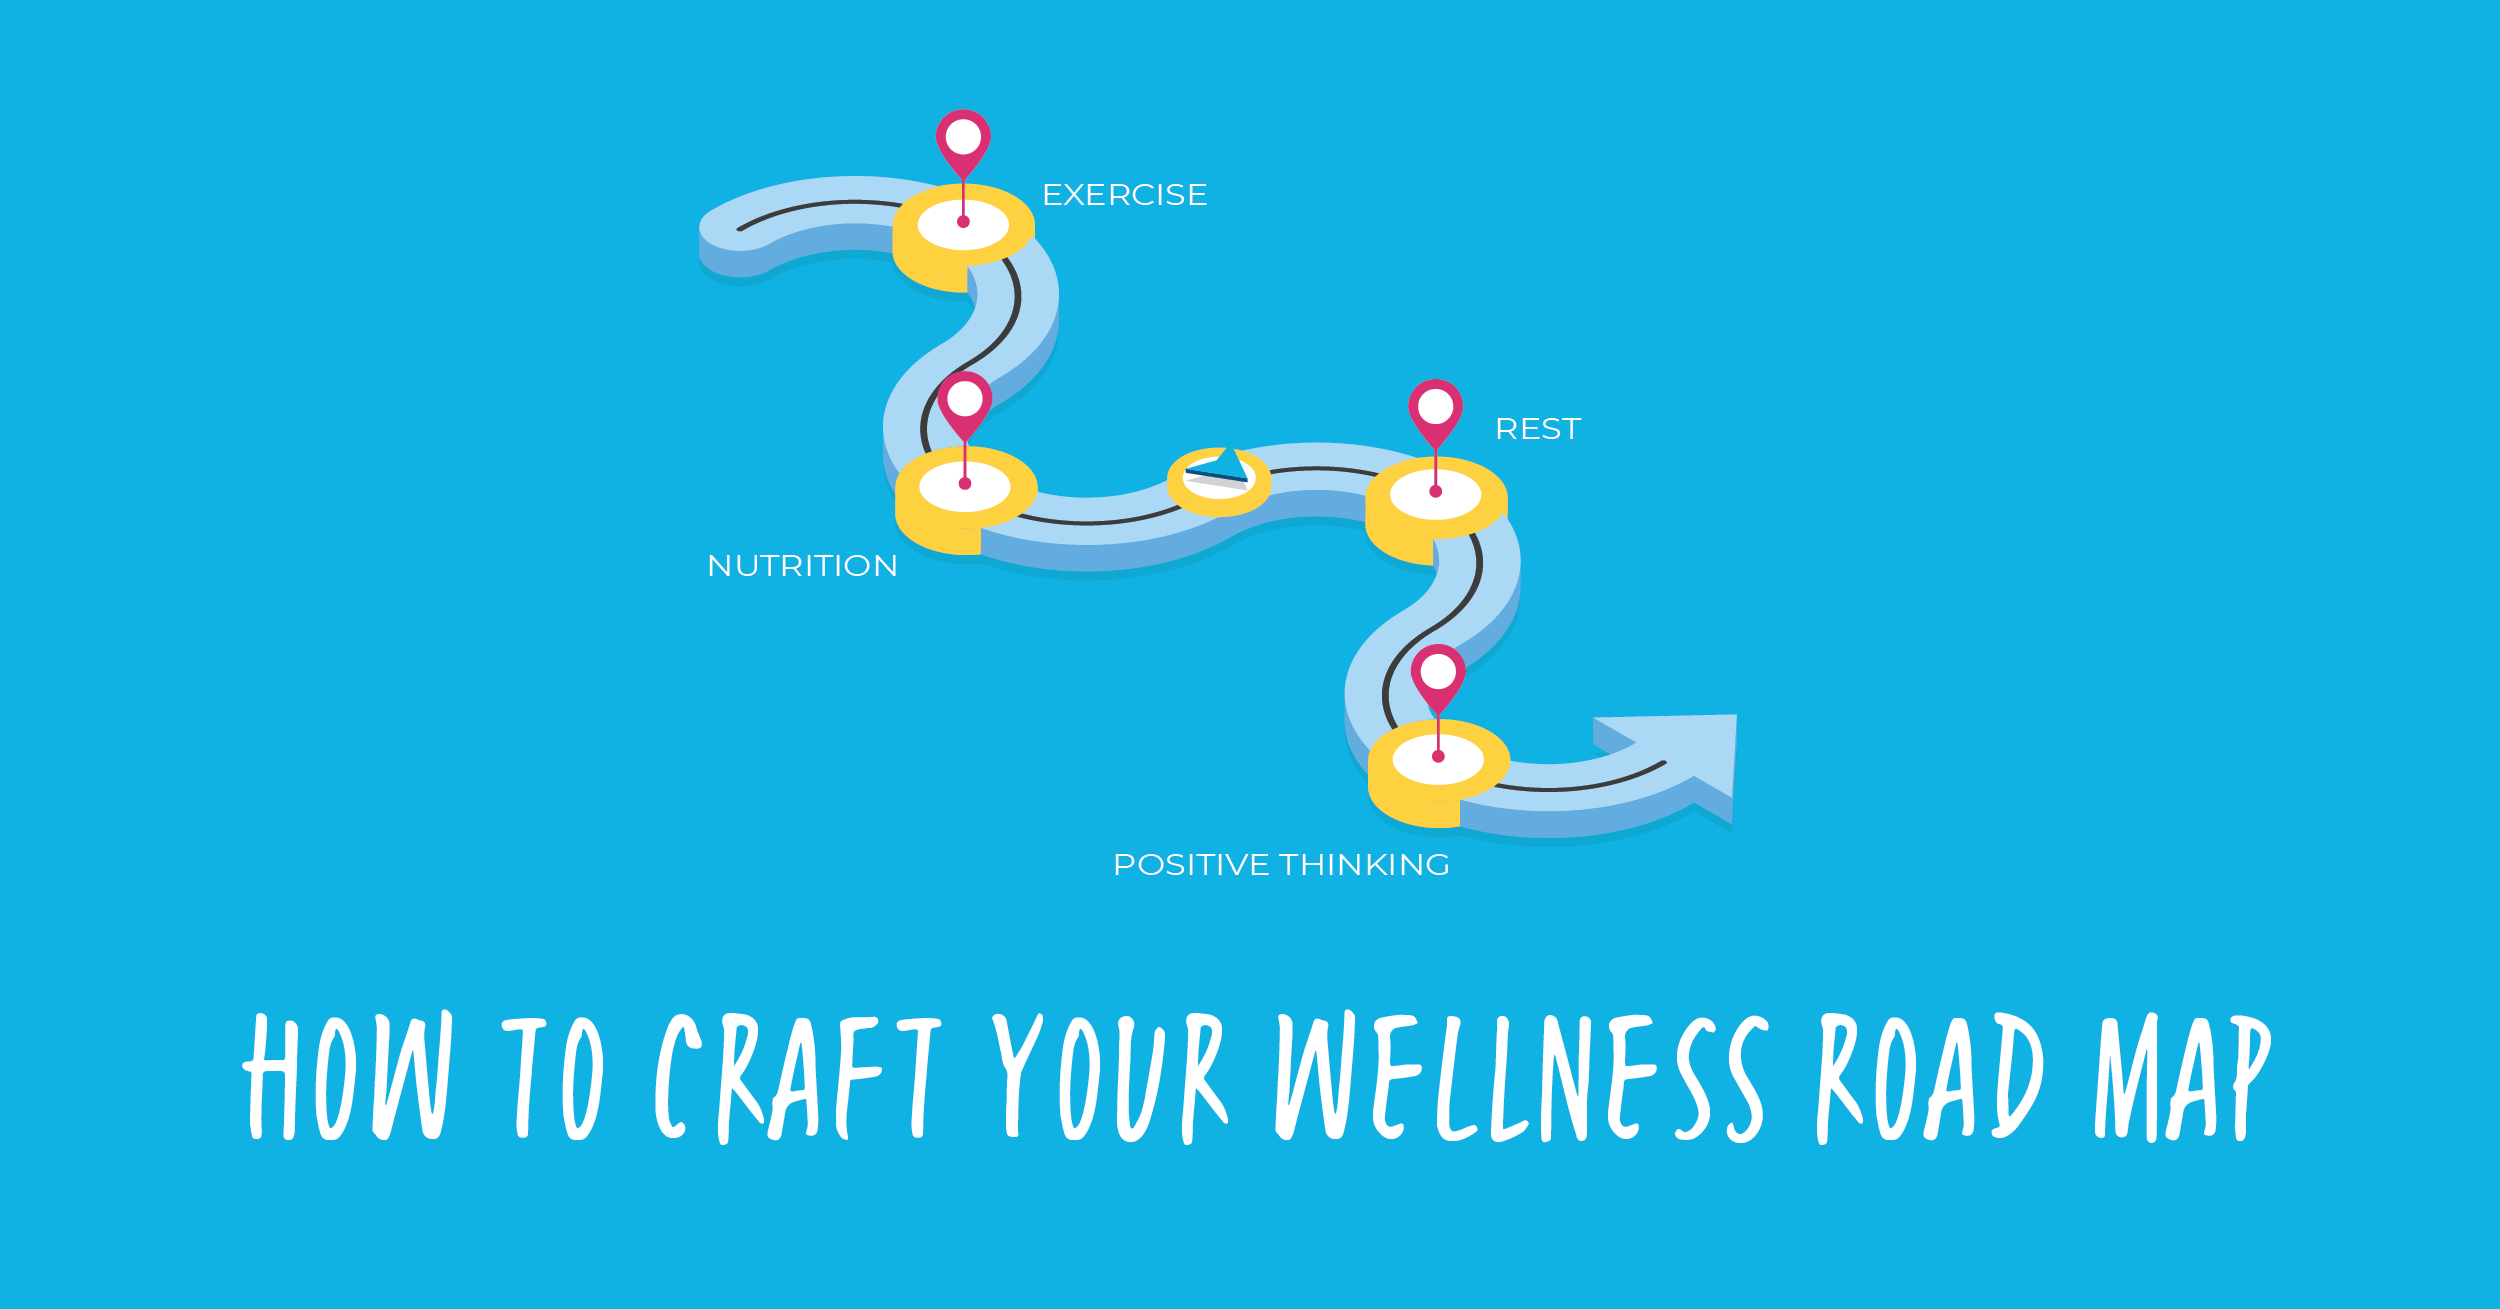 Wellness Road Map